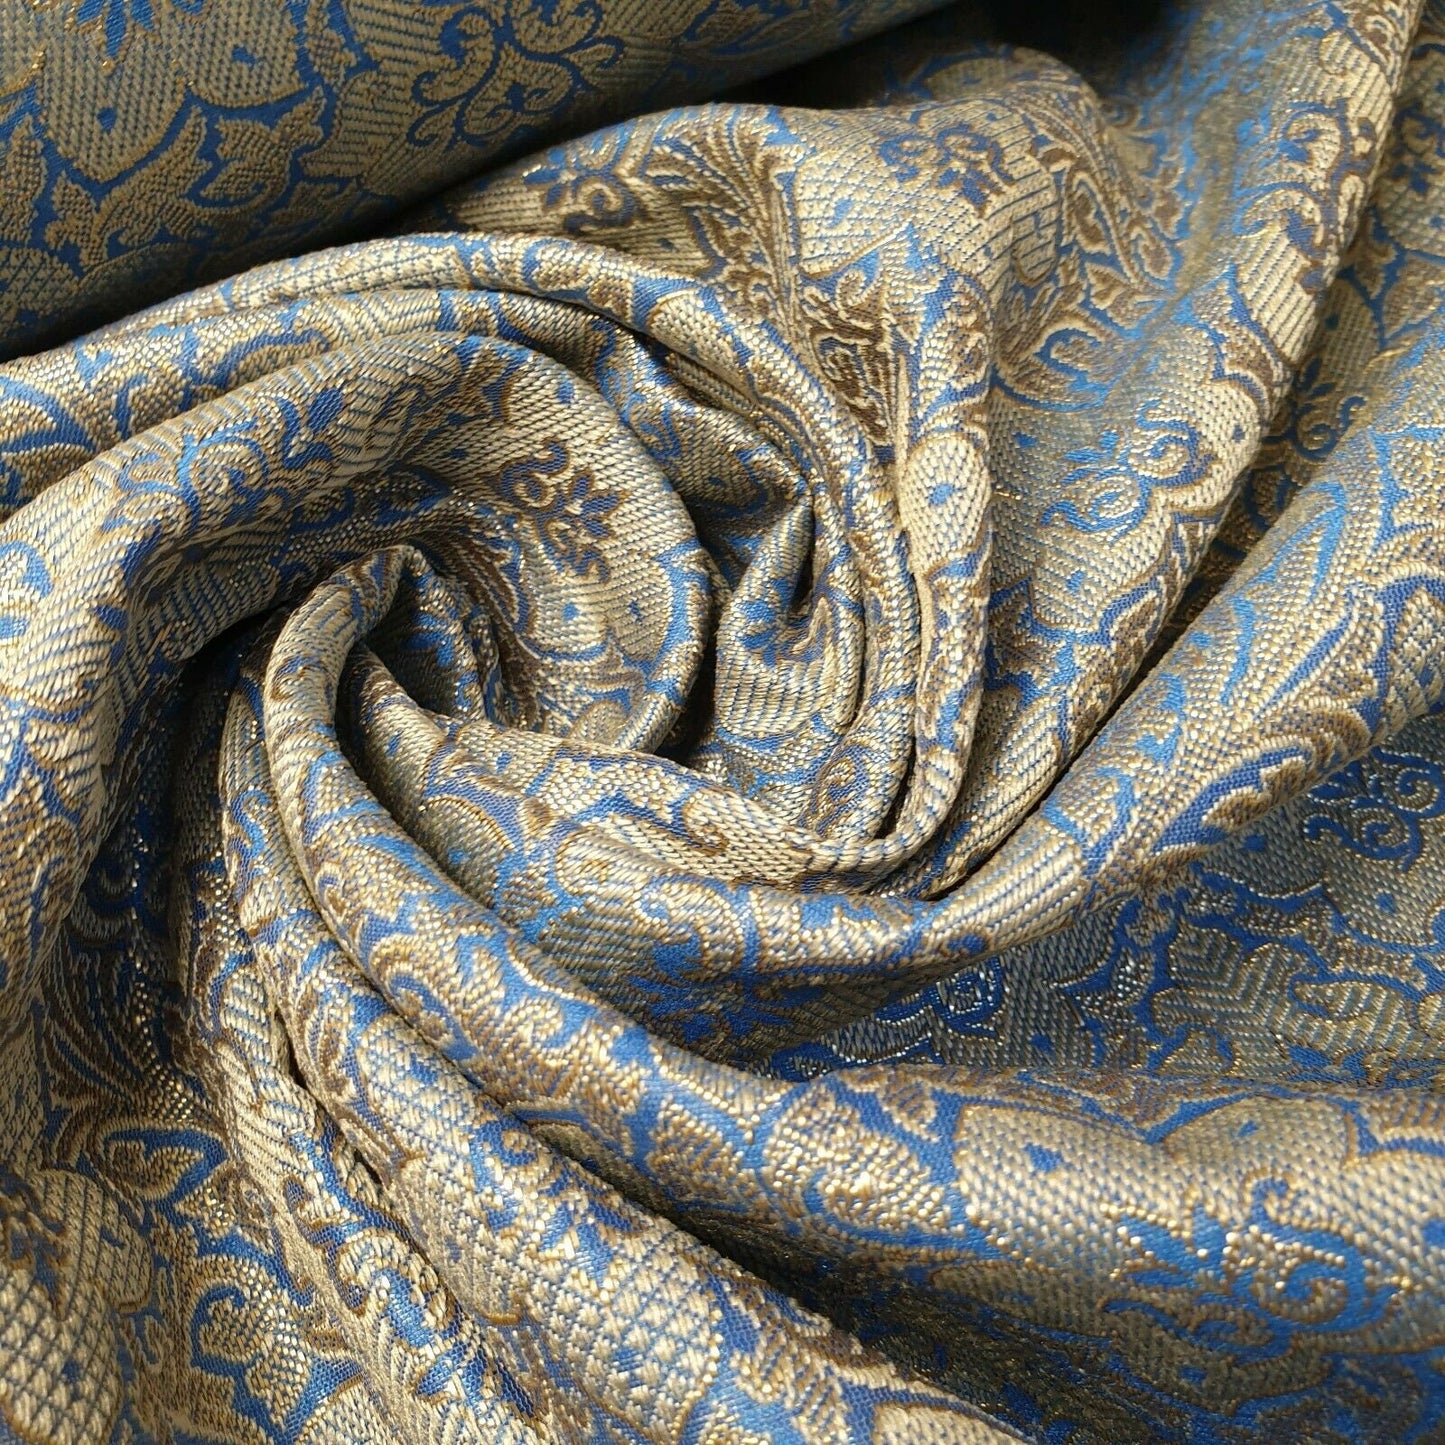 Sky Blue Indian Jacquard Banarasi Brocade Print Craft Dress Decor Fabric 44"